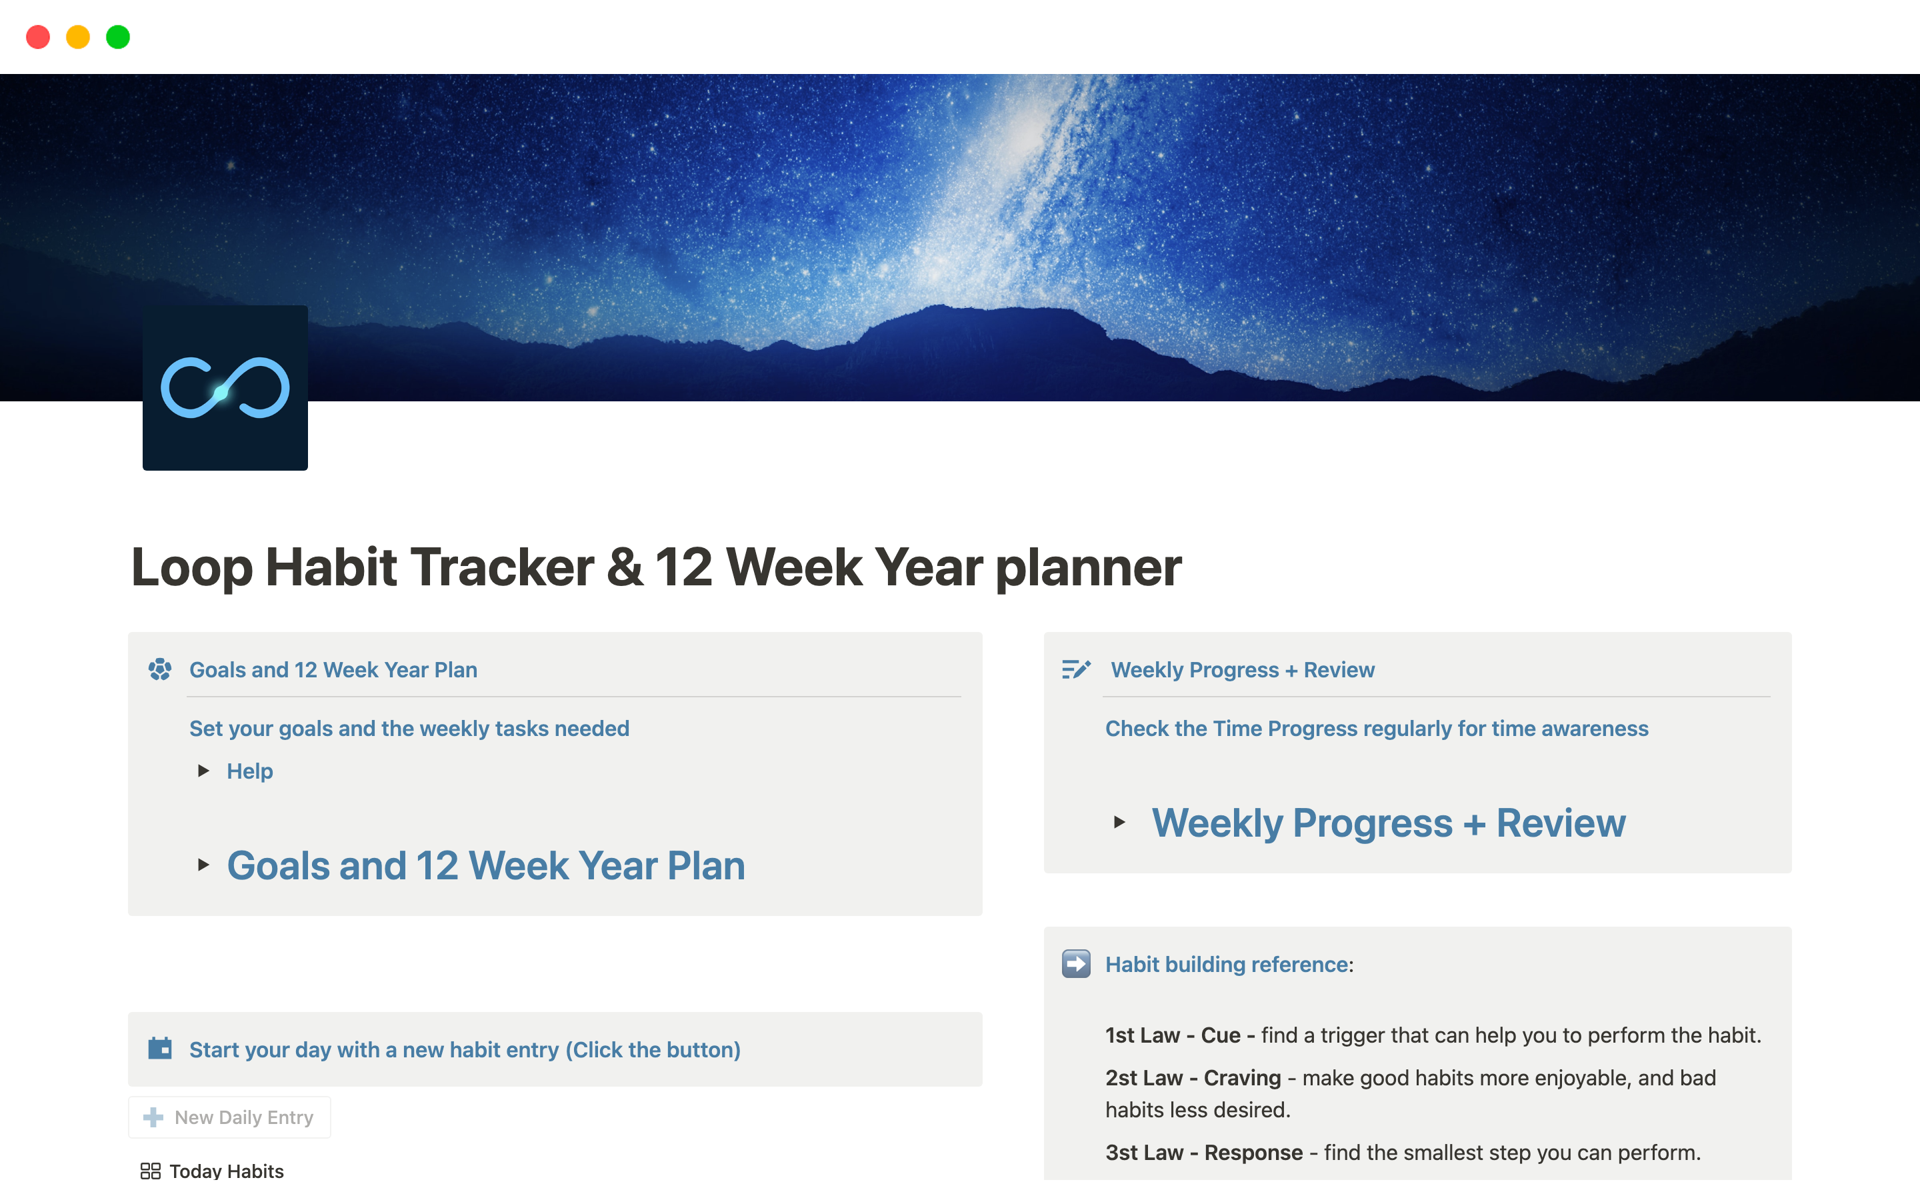 Aperçu du modèle de Loop Habit Tracker & 12 Week Year planner